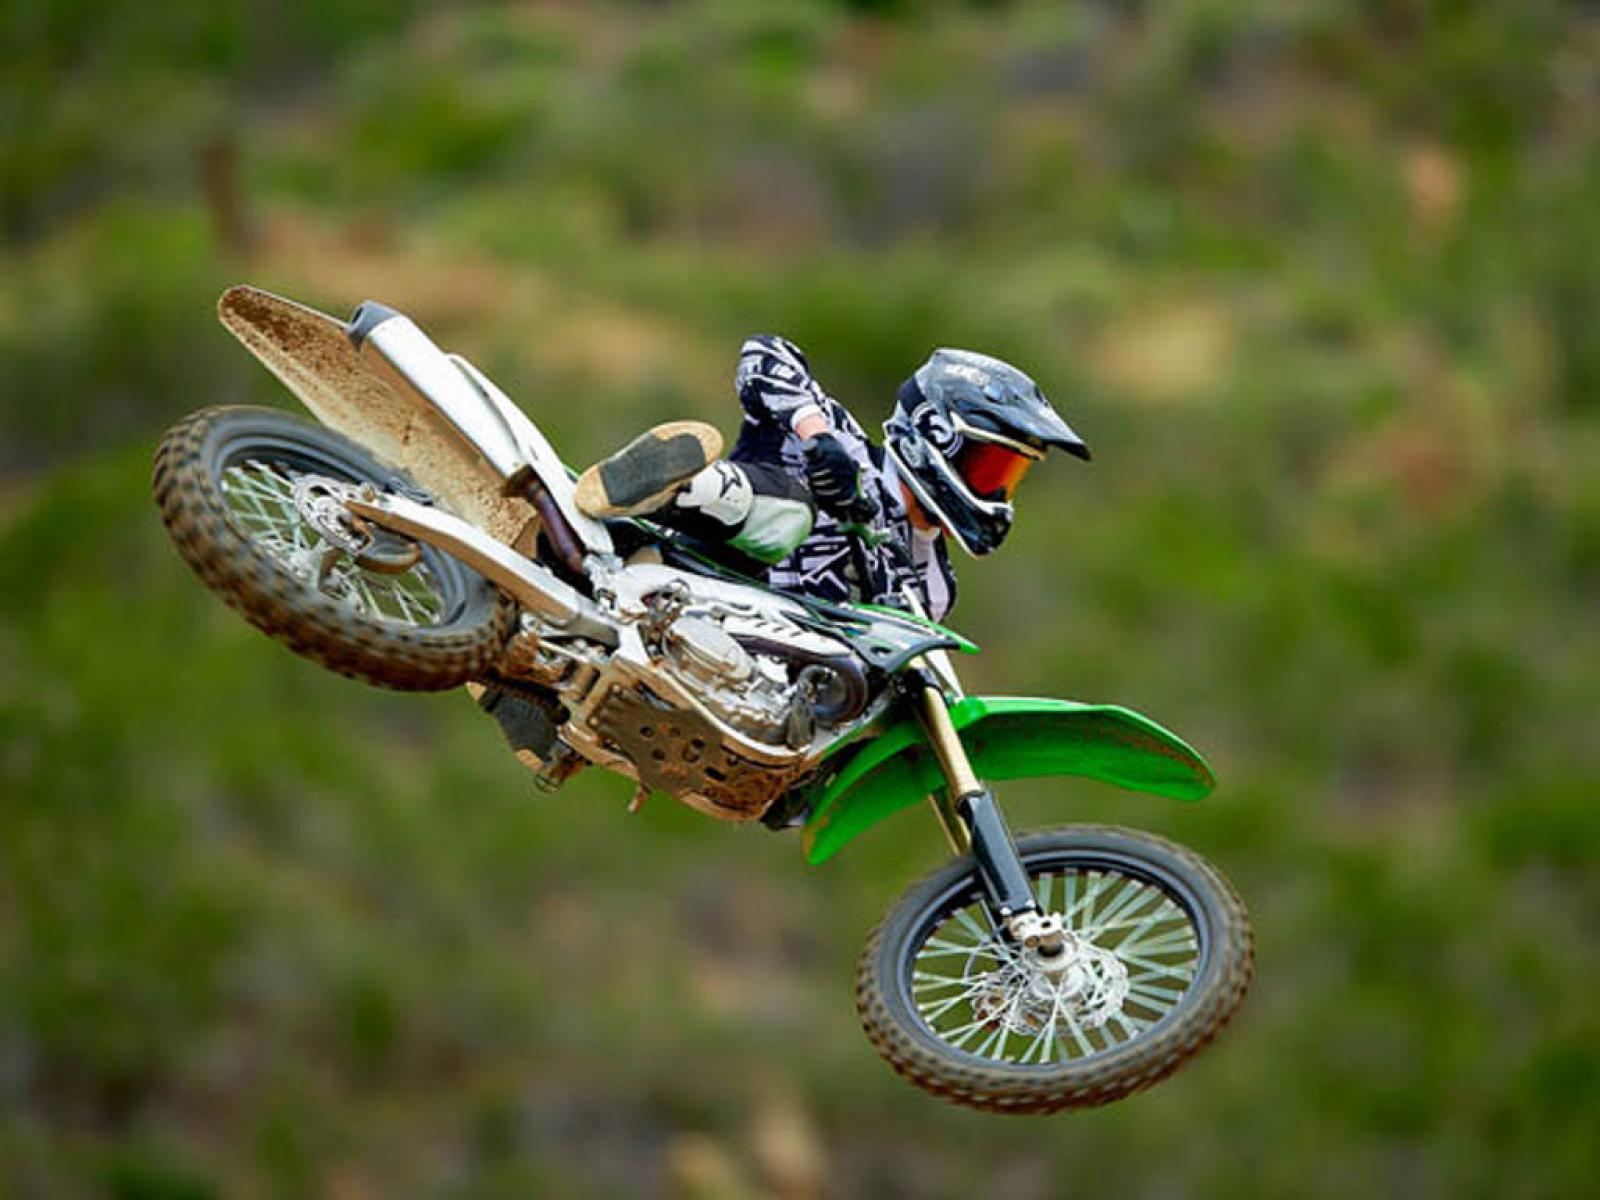 Кроссовые мотоциклы общего пользования. Кроссовый мотоцикл мотокросс. Самый мощный Kawasaki KX кроссовый. Миникросс Dirt Bike 125сс. КТМ Кавасаки мотокросс.